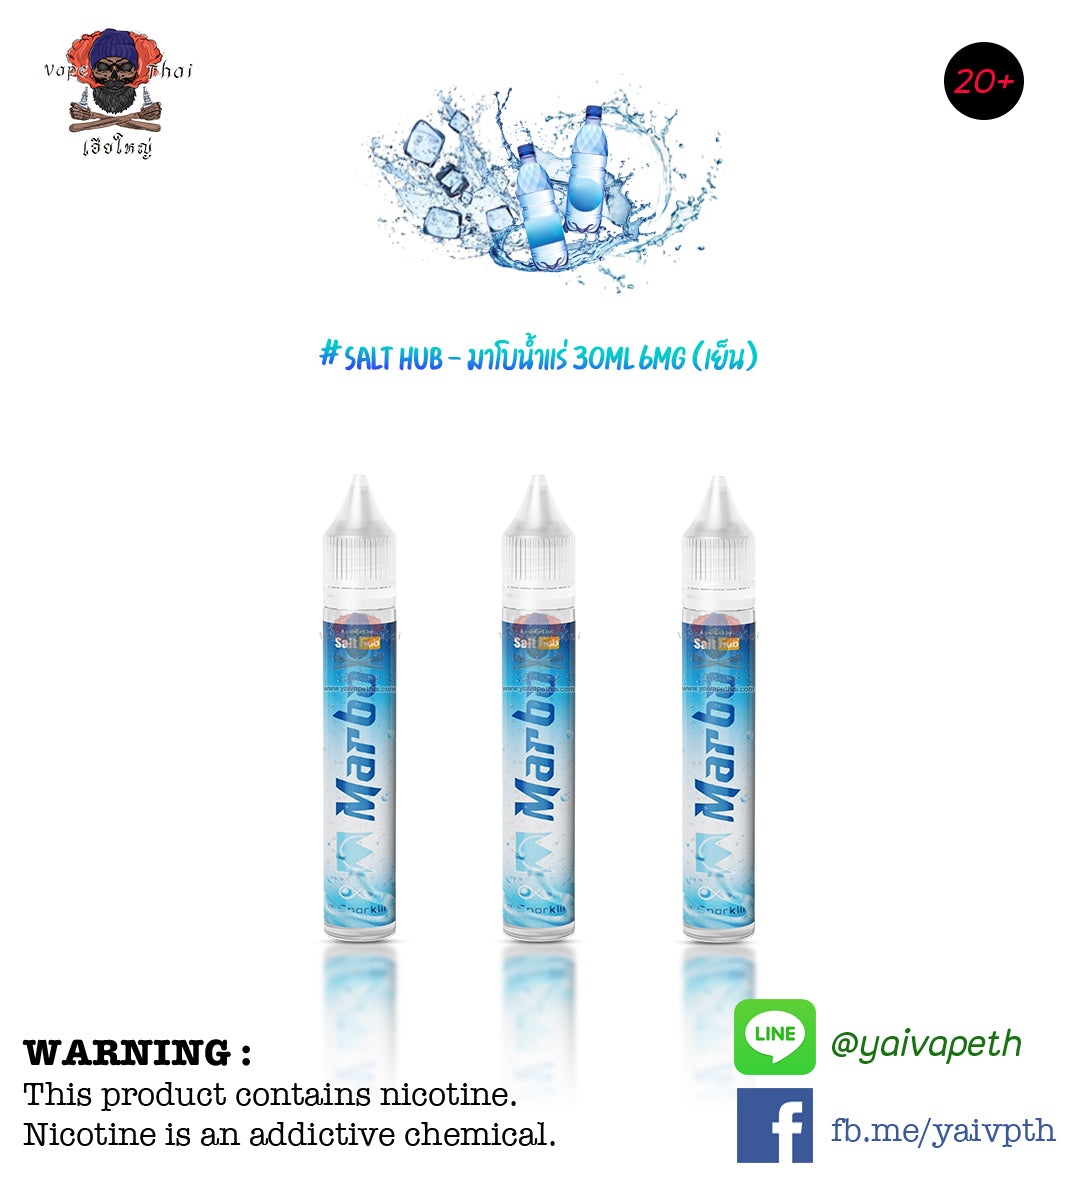 มาโบน้ำแร่ – น้ำยาบุหรี่ไฟฟ้า Marbo Ice Sparkling 30 ml (Nic6) แท้, น้ำยาบุหรี่ไฟฟ้า( Freebase E-liquid ), Marbo - Yaivape บุหรี่ไฟฟ้า